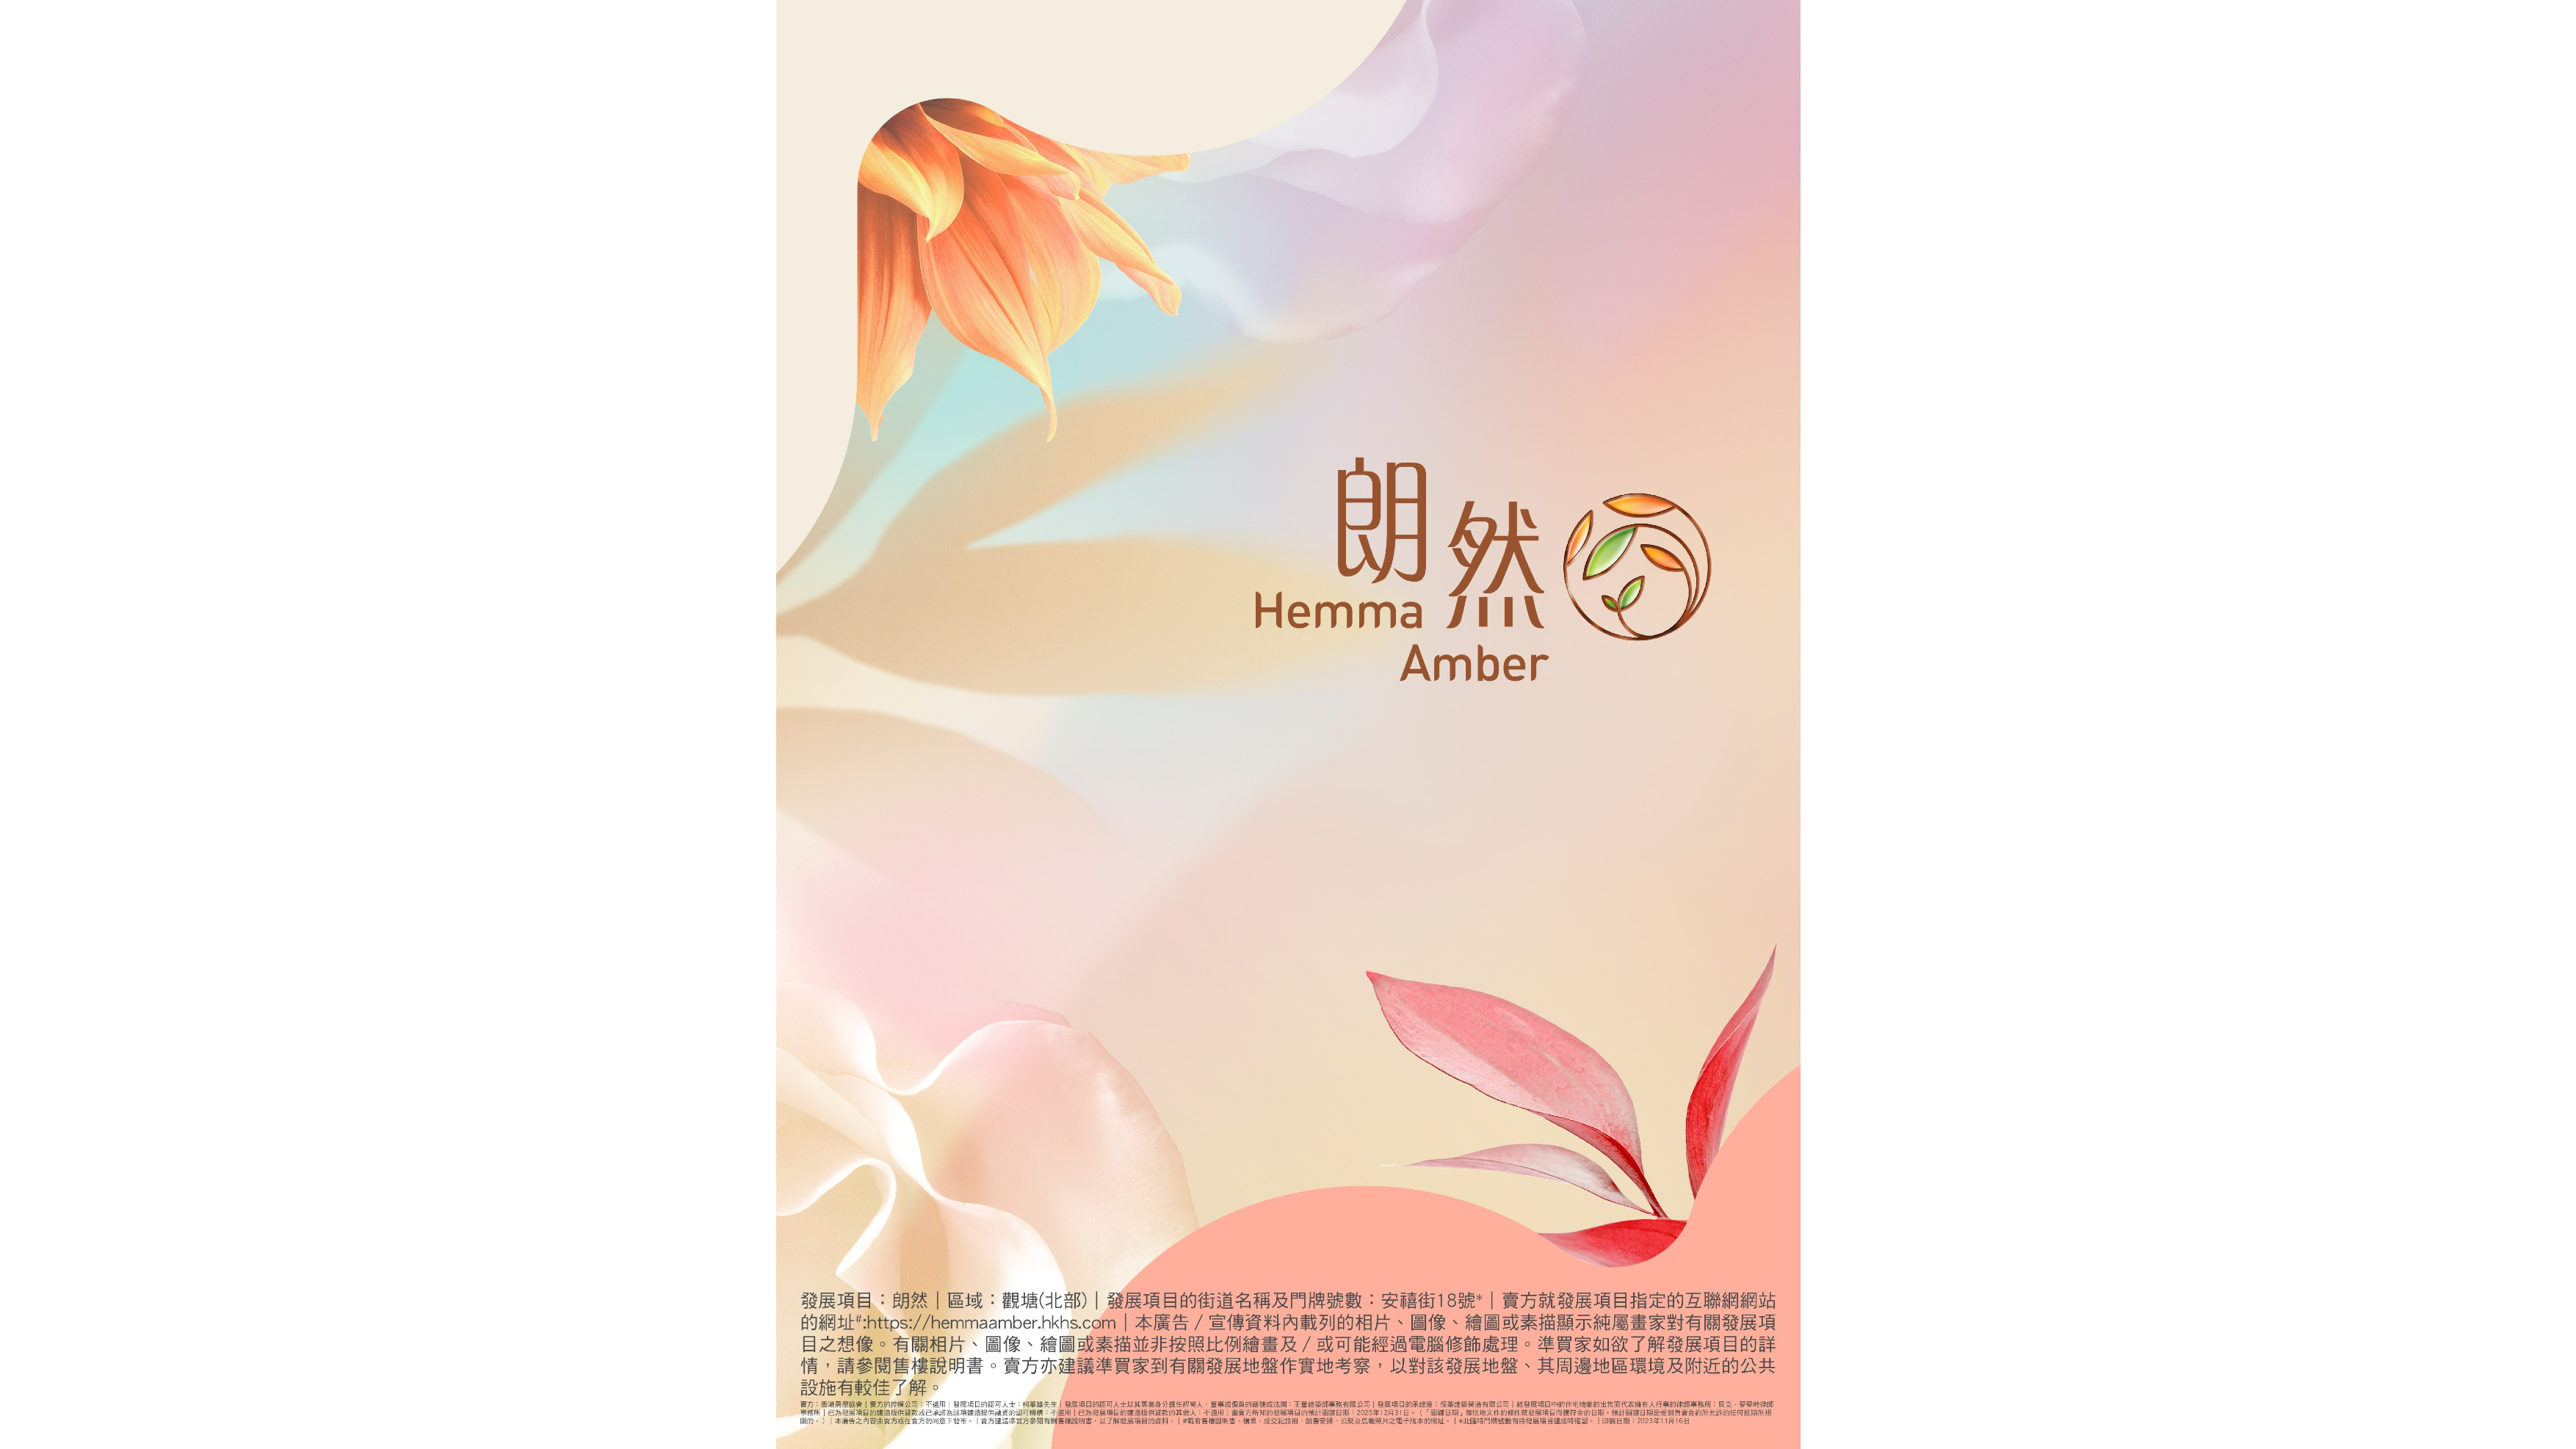 香港房屋協會(房協)位於安達臣道R2-3用地的資助出售房屋項目，正式命名為「朗然」 (Hemma Amber)，寓意置身清澈明亮、悠然自在的生活中，幸福而高貴。